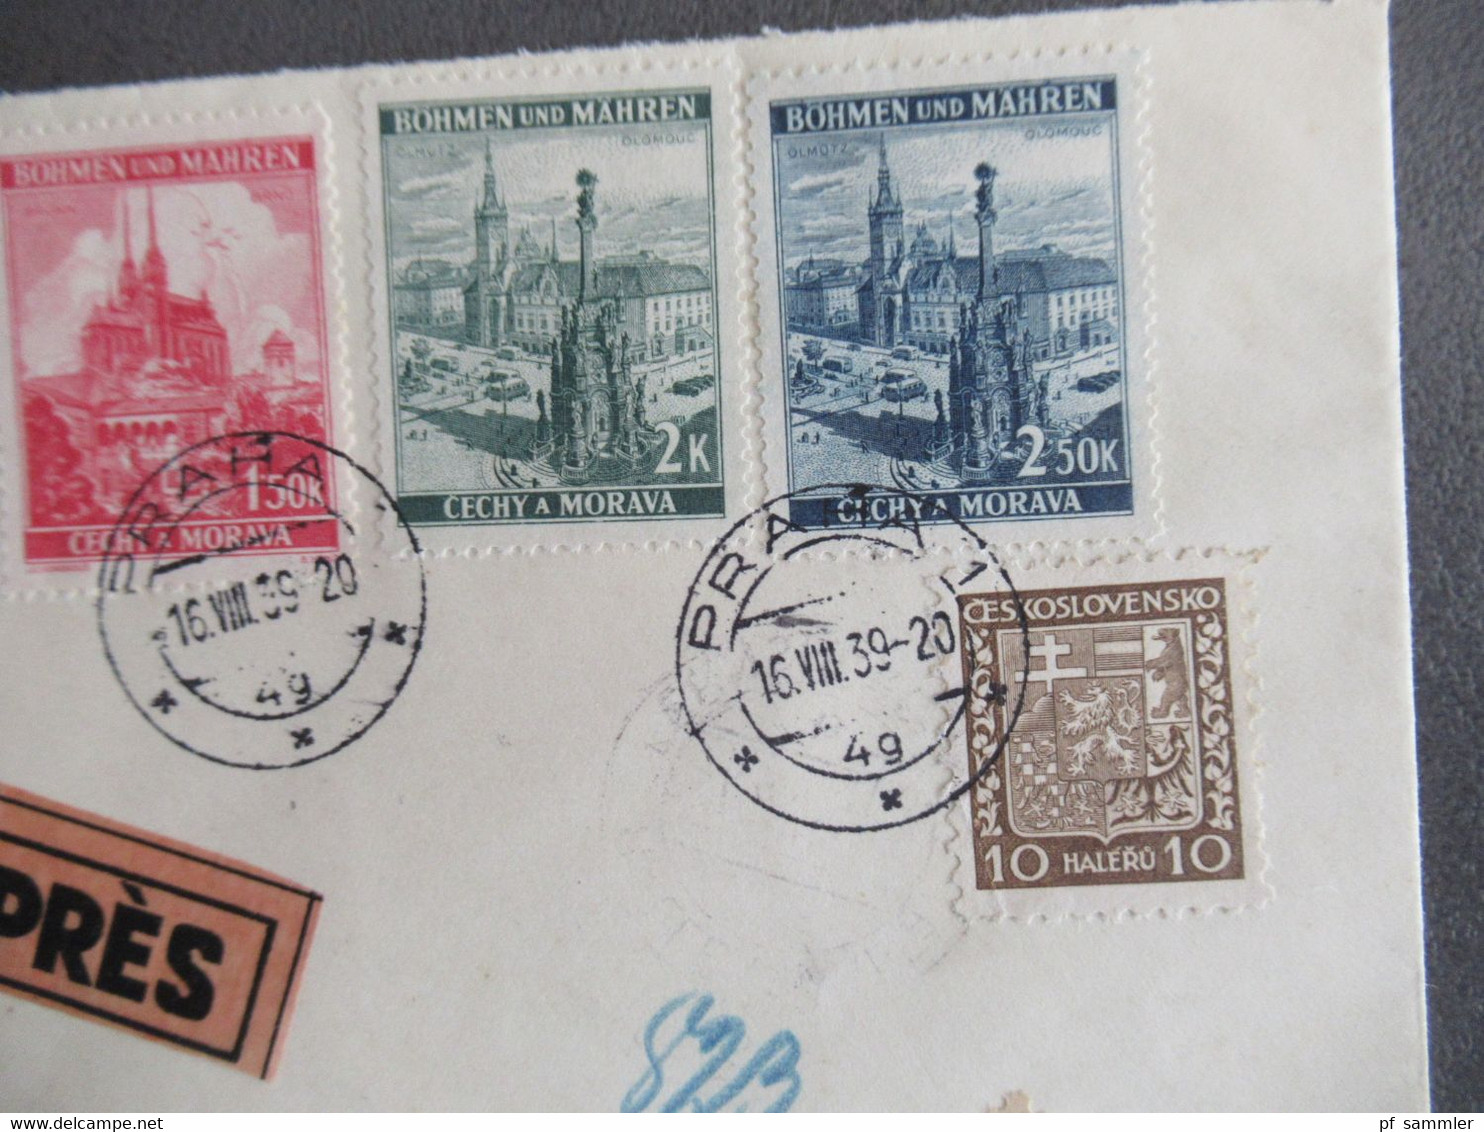 Böhmen Und Mähren 16.8.1939 Früher Beleg MiF Mit CSSR Marke Einschreiben Expres Ank. Stempel Halle Fernsprechamt - Covers & Documents